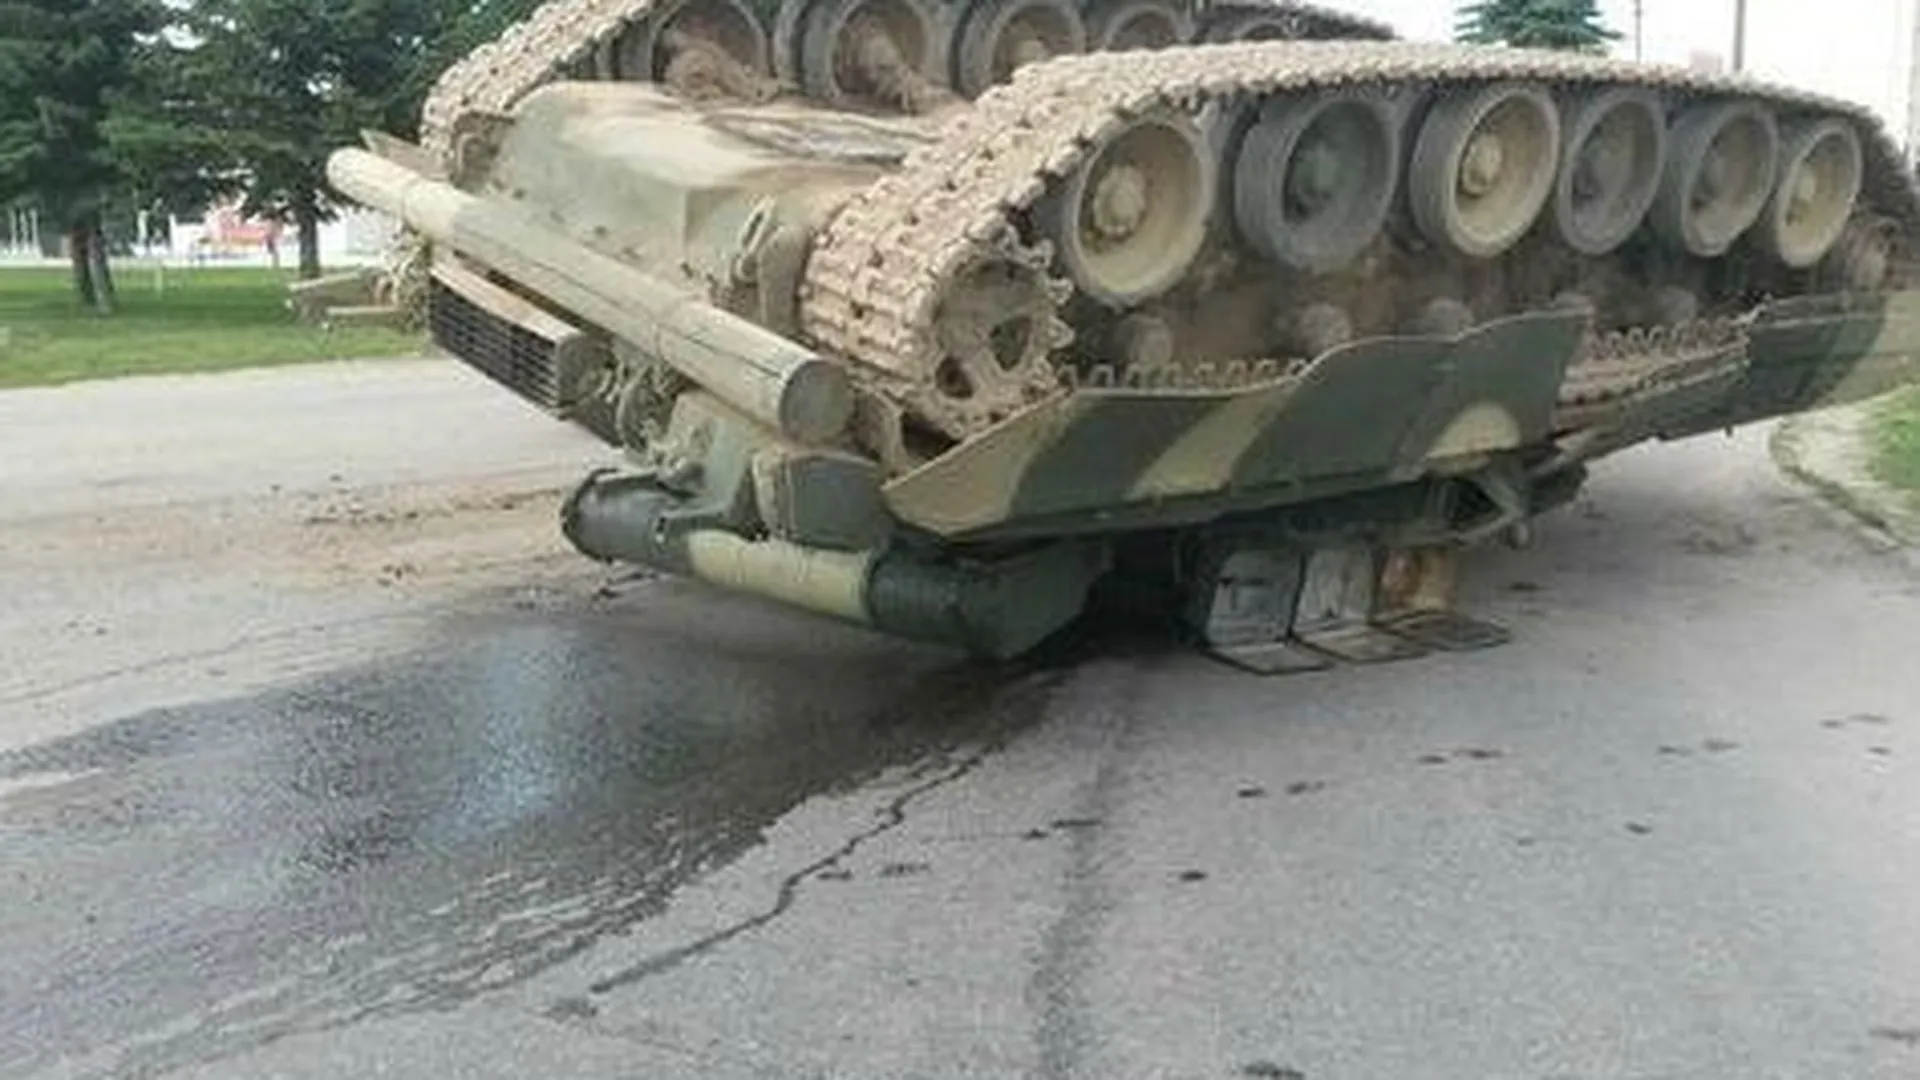 В Наро-Фоминске везли по городу и уронили танк